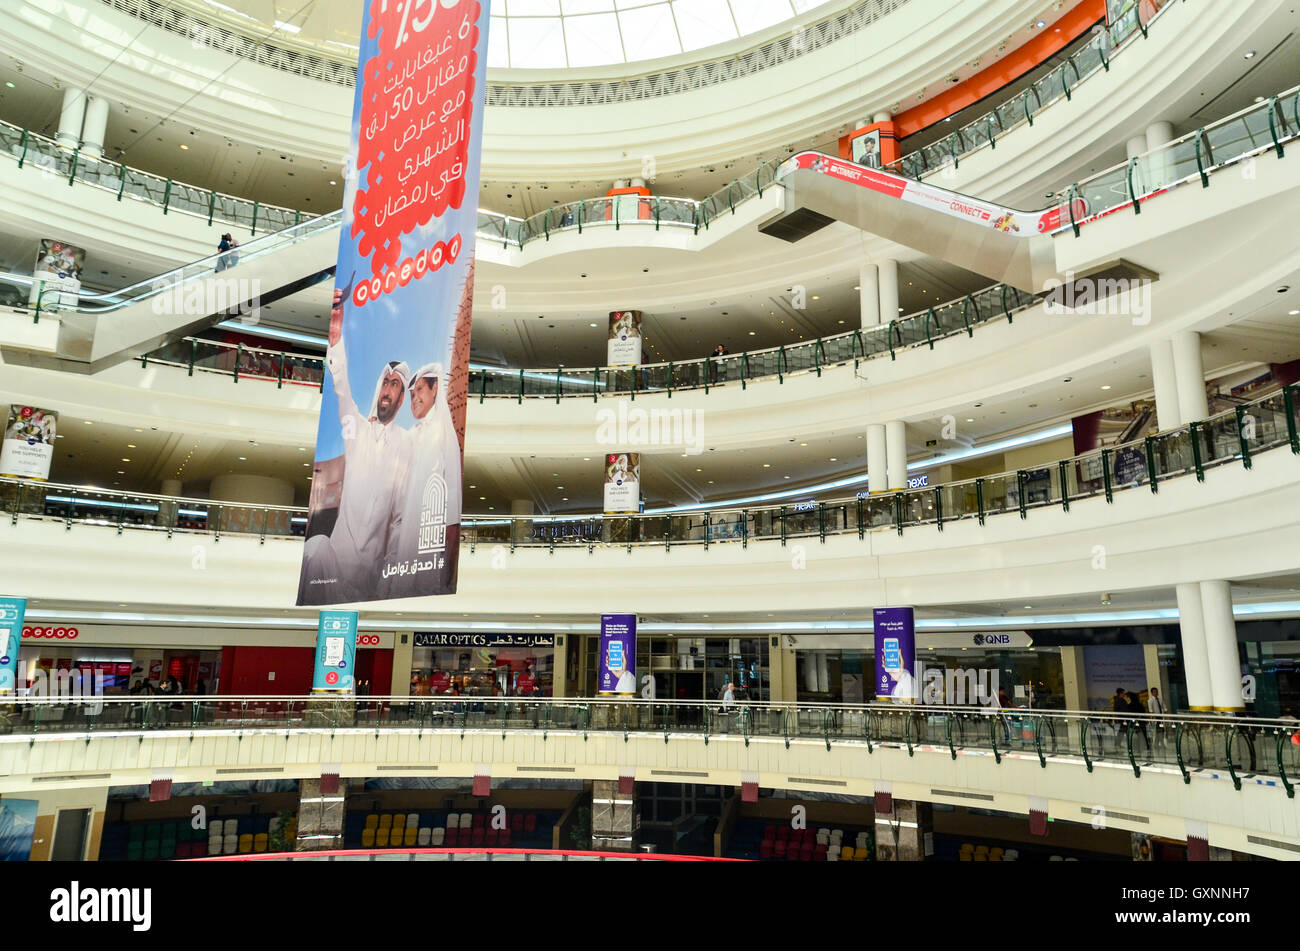 Annuncio Ooredoo nel mezzo del Doha City Center, un grande centro commerciale in Qatar Foto Stock